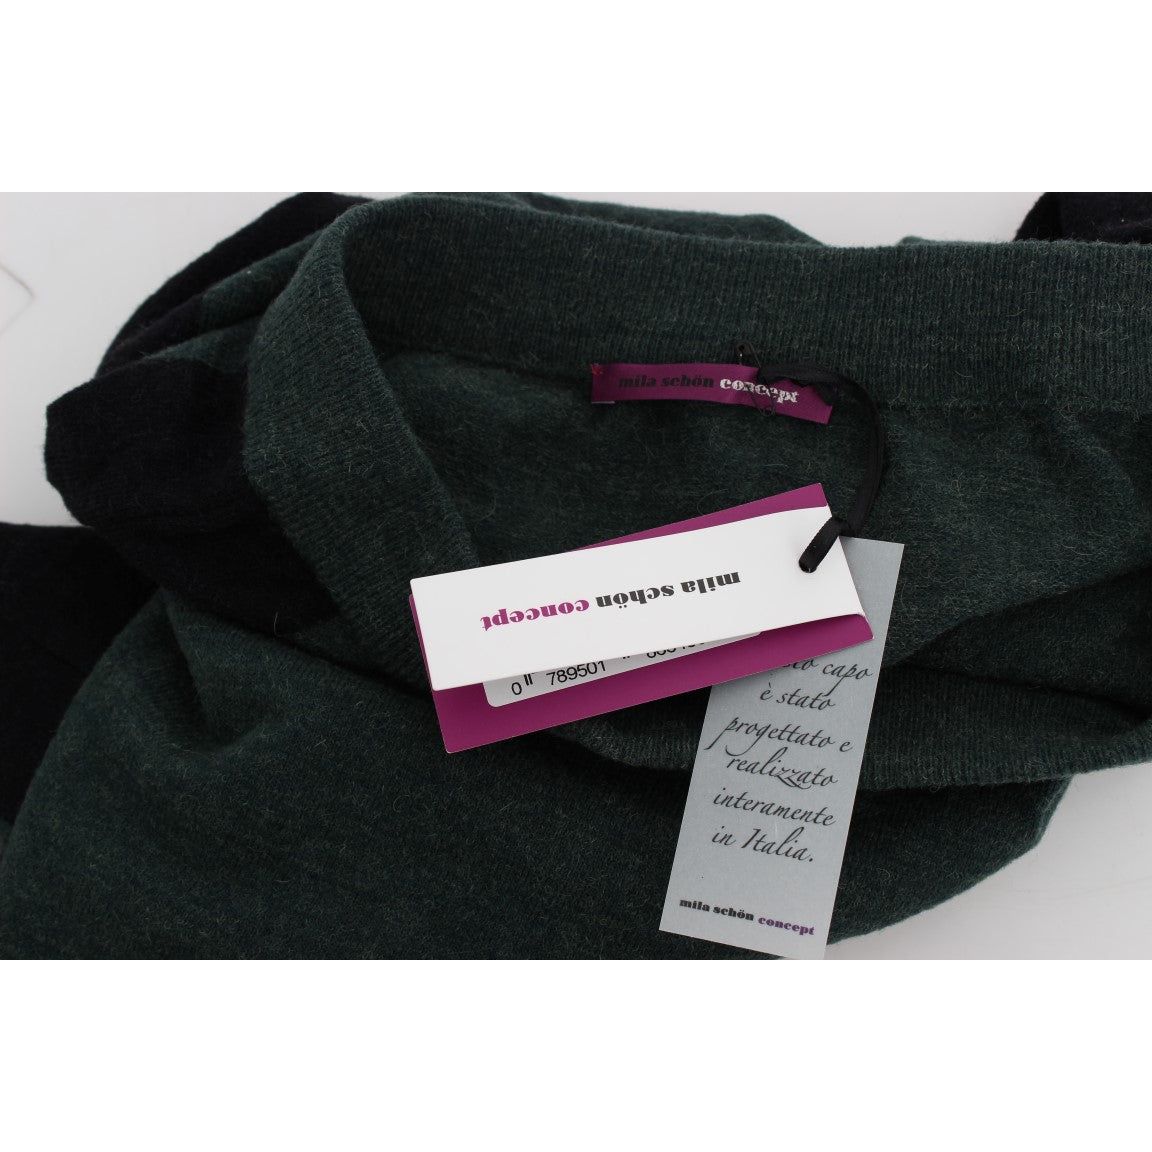 MILA SCHÖN | Green Wool Blend Pencil Skirt | McRichard Designer Brands